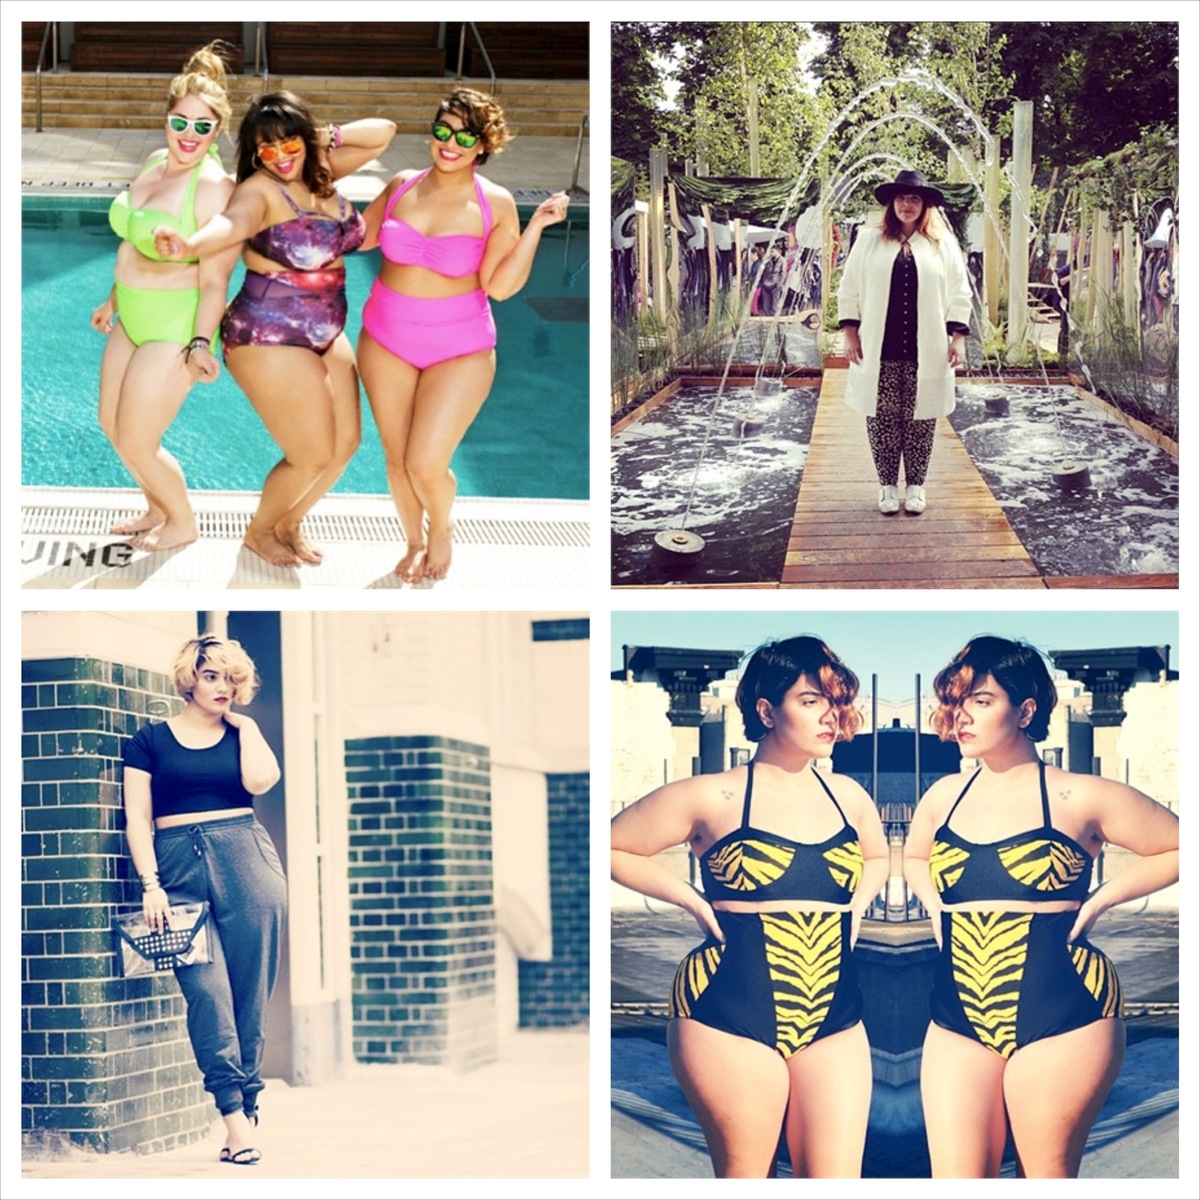 Instagram bannit les rondeurs féminines de sa recherche #curvy